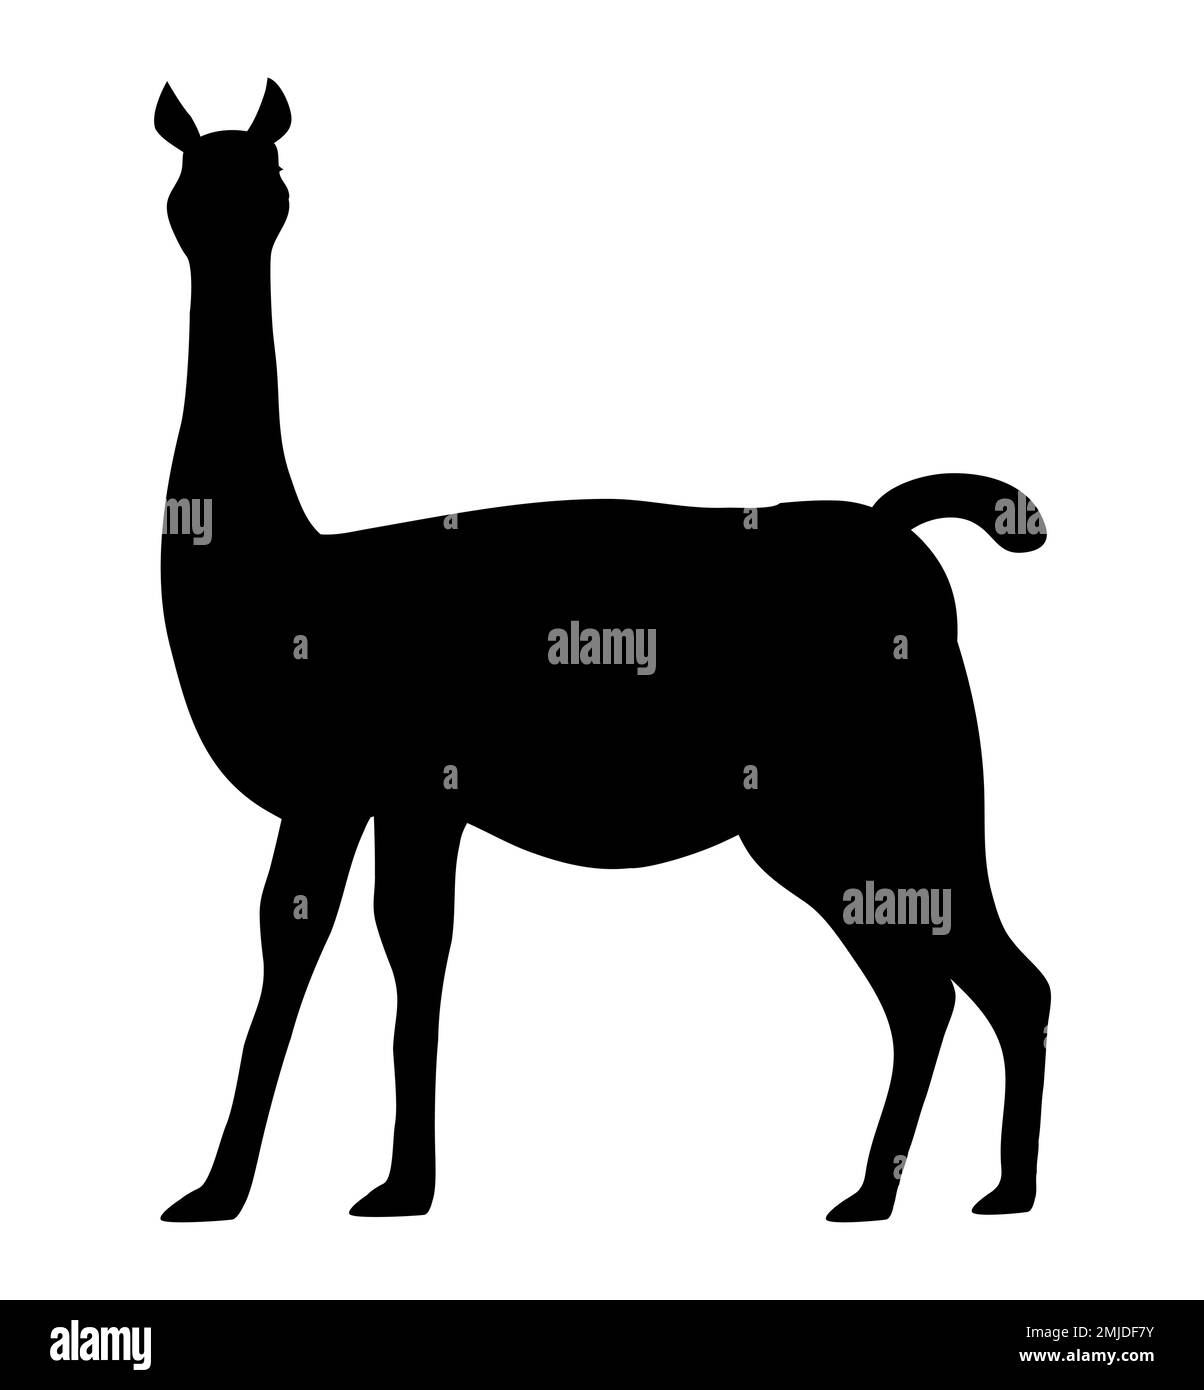 Seltene Guanako-Silhouette. Lama-ähnliches wildes Tier. Säugetier der Gattung Lamas der Cameliden-Familie. Ein gefährdetes Tiervektorbild Stock Vektor